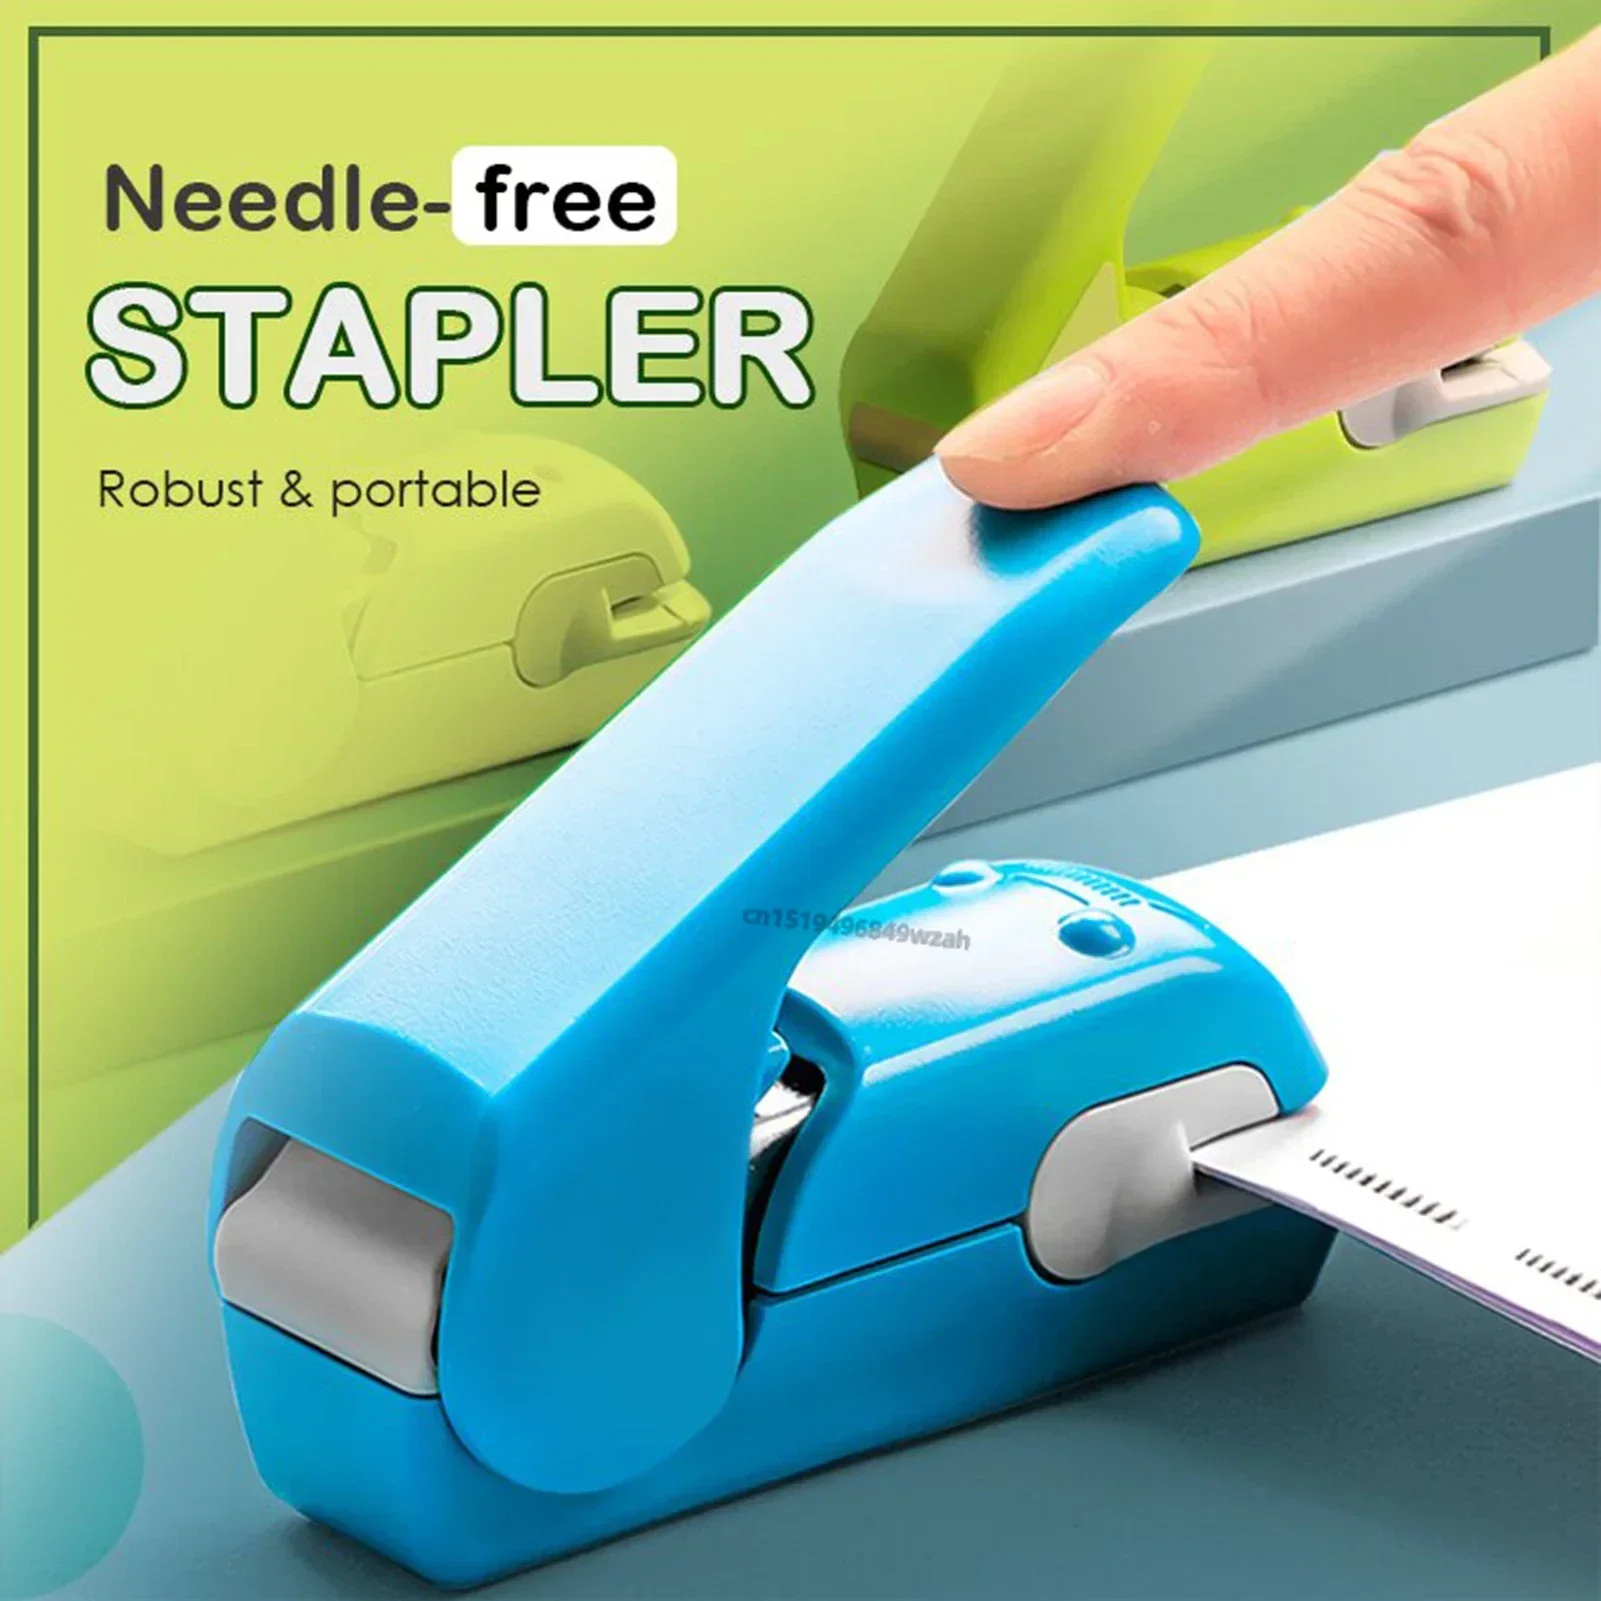 

Staple Free Stapler Time Saving Effortless Needle Free Handhled Stapler Mini Portable Stapler Effortless Office School Supplies